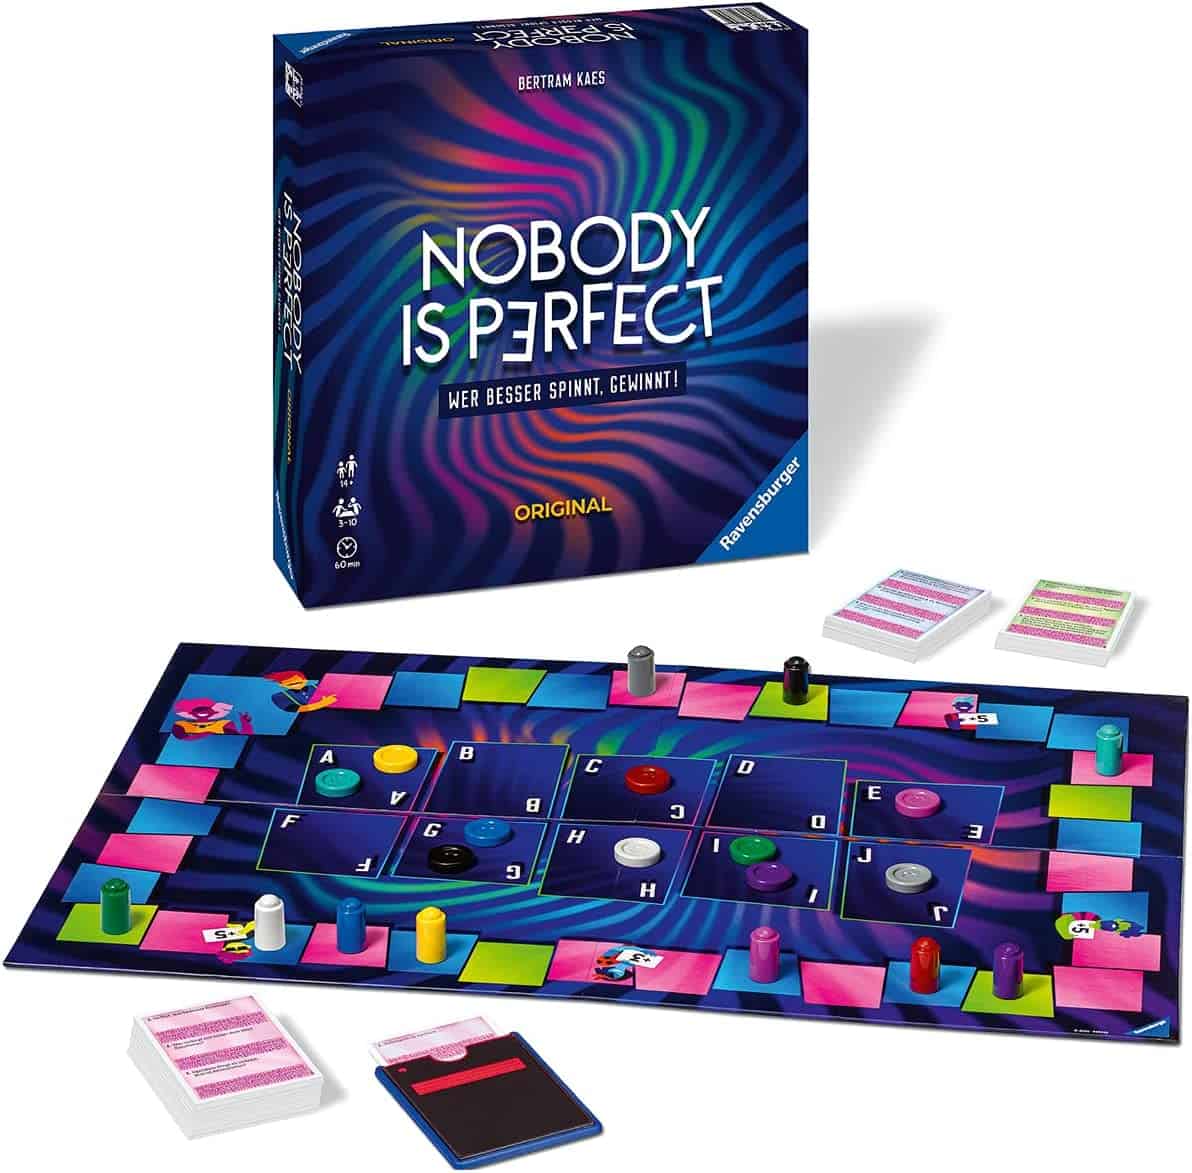 Ravensburger - Nobody is Perfect Partyspiel - für 24,99 € inkl. Versand statt 34,99 €